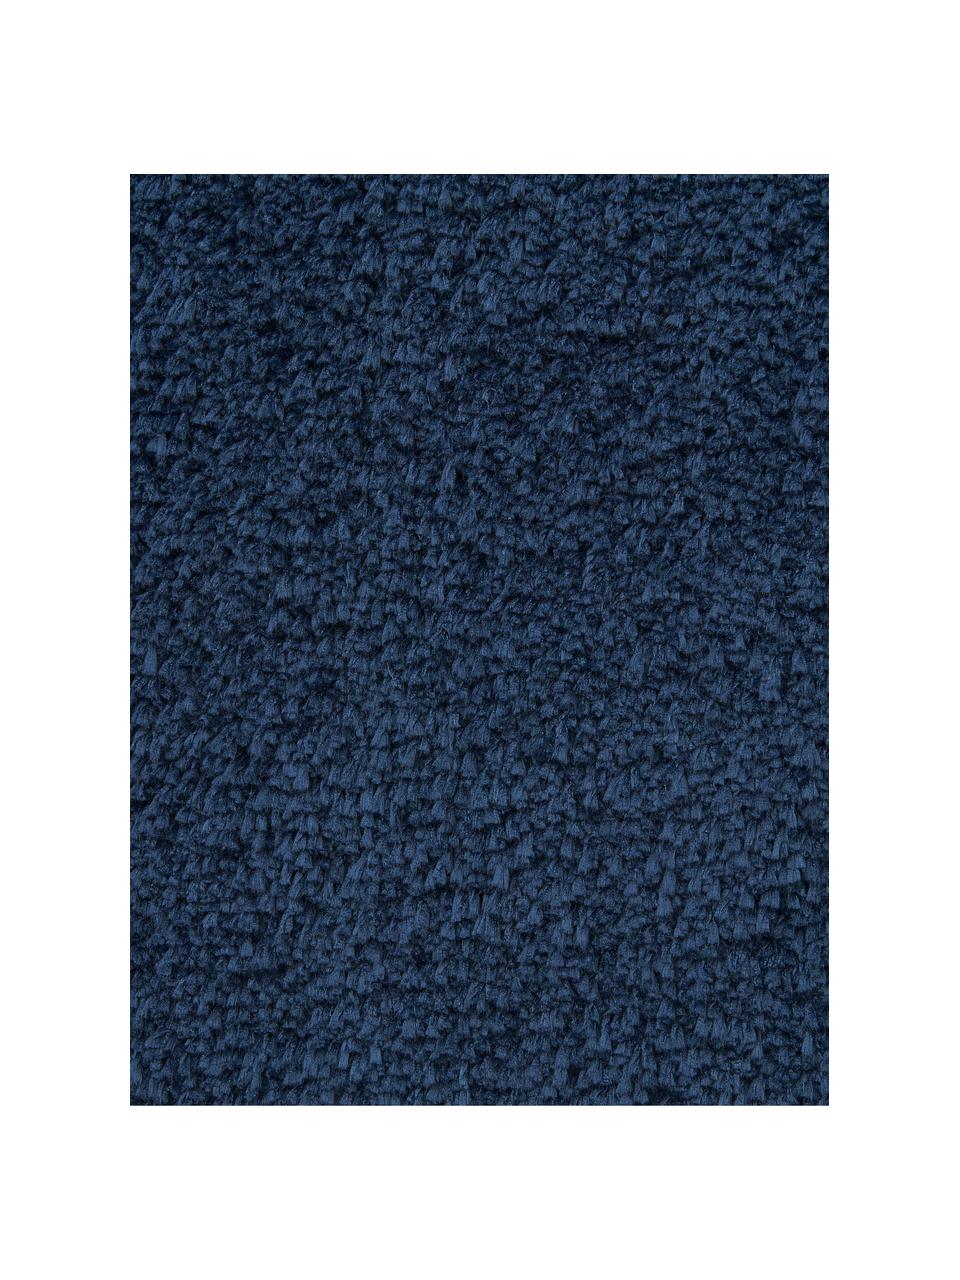 Tappeto rotondo morbido a pelo lungo Leighton, Retro: 70% poliestere, 30% coton, Blu scuro, Ø 120 cm (taglia S)